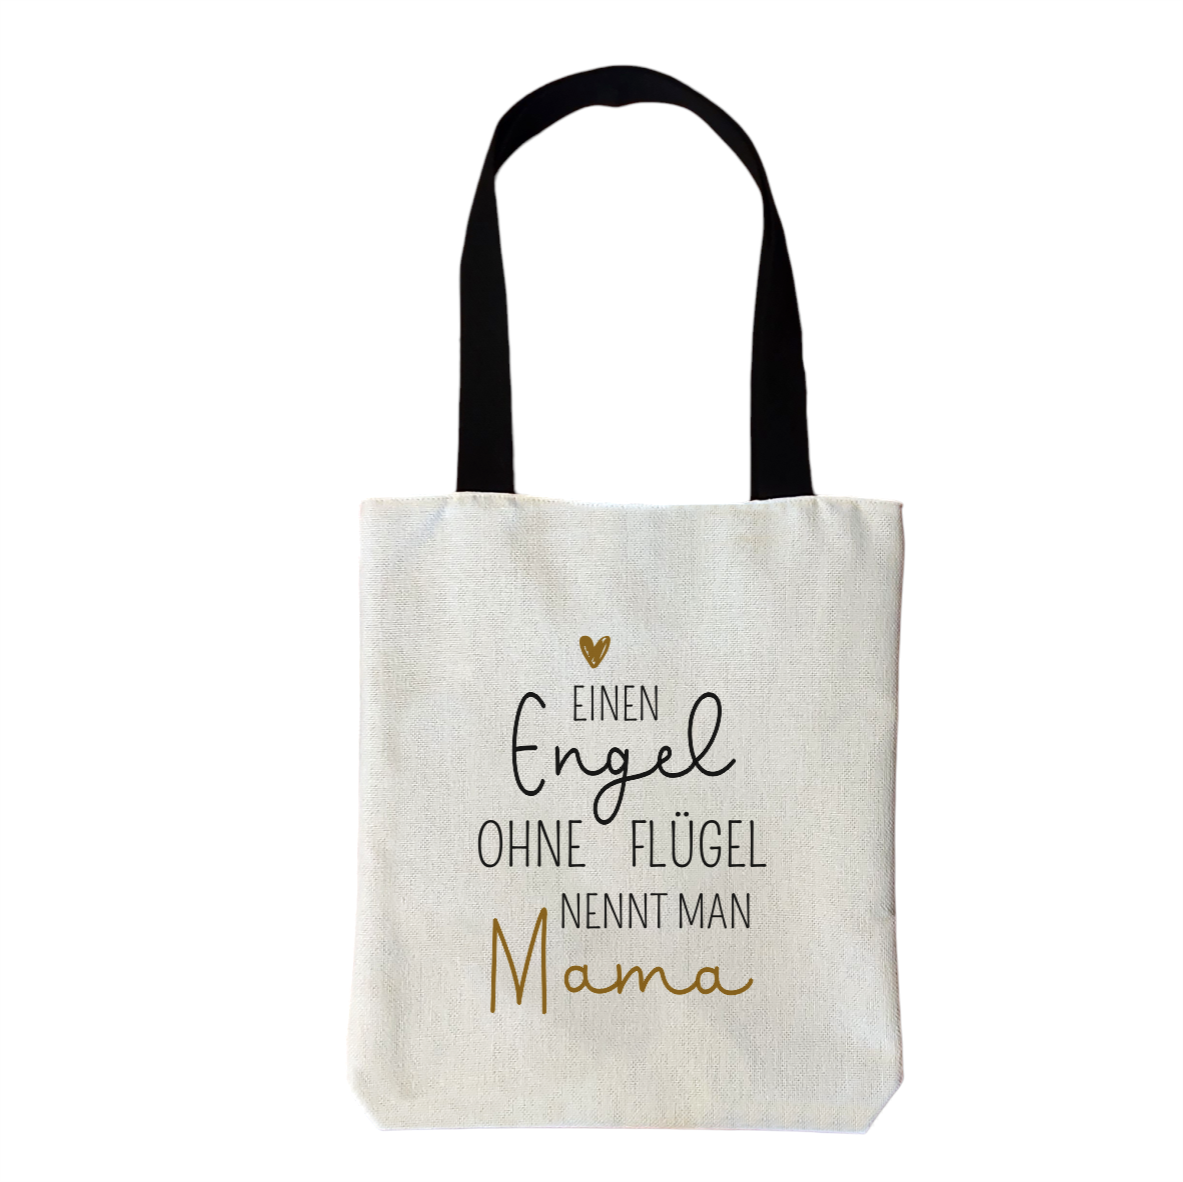 Einkaufstasche "Einen Engel ohne Flügel nennt man Mama"